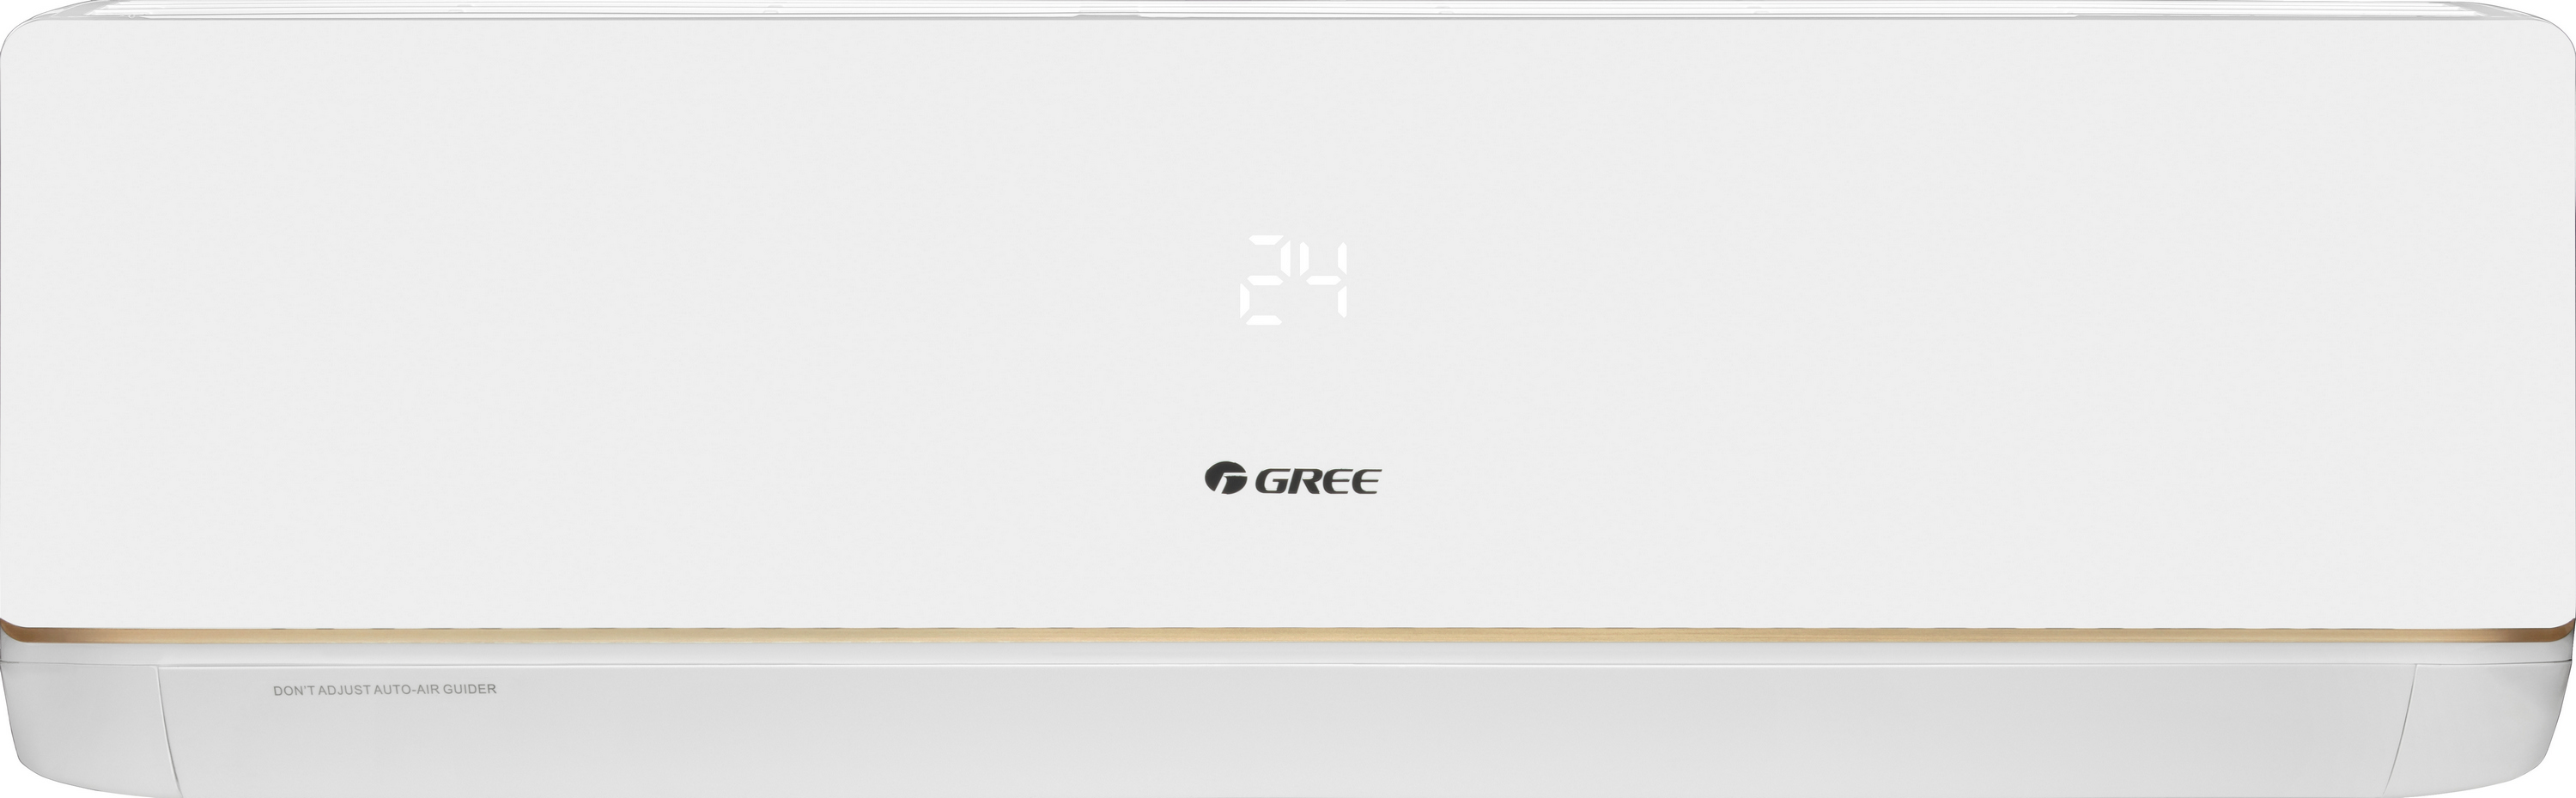 Кондиционер сплит-система Gree Bora Inverter R32 GWH12AAB-K6DNA5A Wi-Fi цена 35800.00 грн - фотография 2